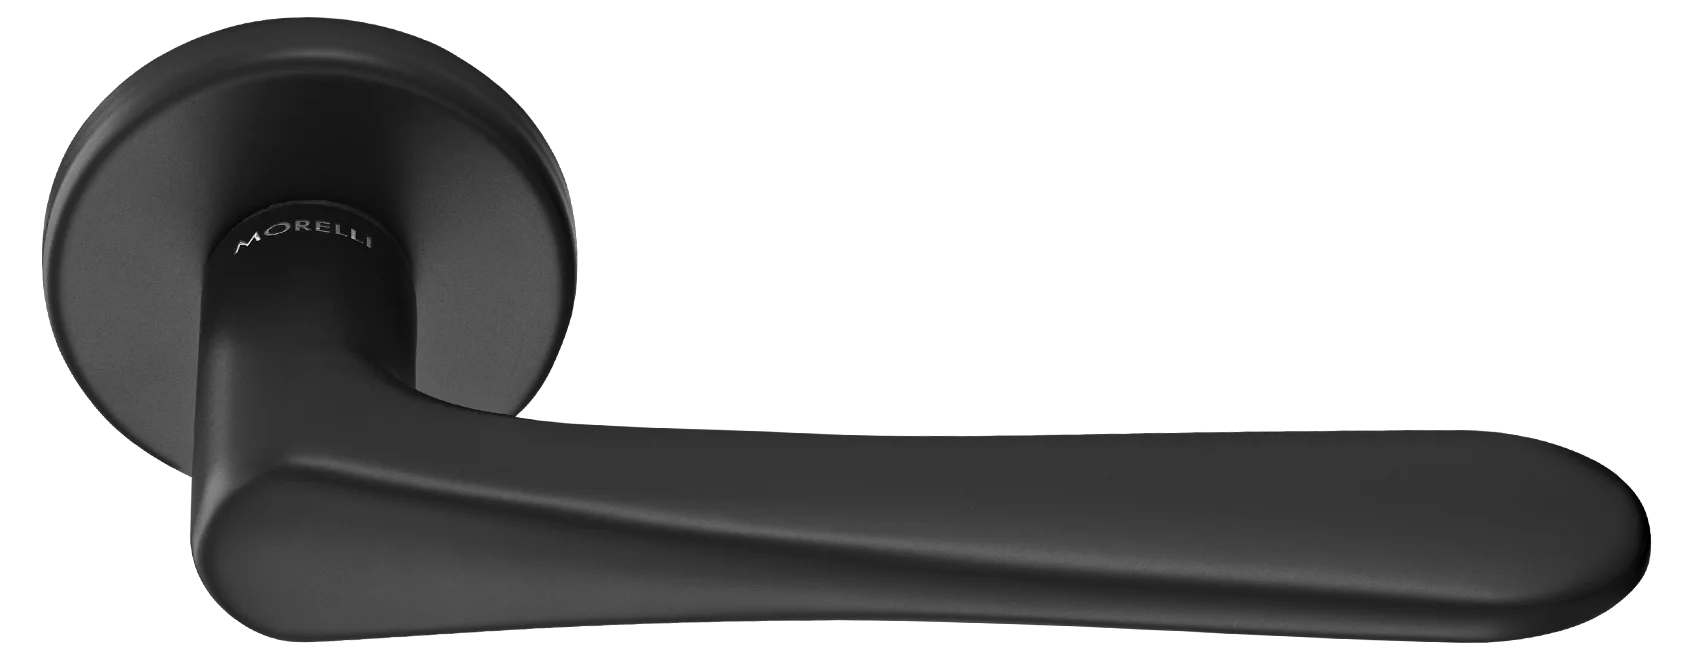 AULA R5 NERO, ручка дверная на розетке 7мм, цвет -  черный фото купить Пенза